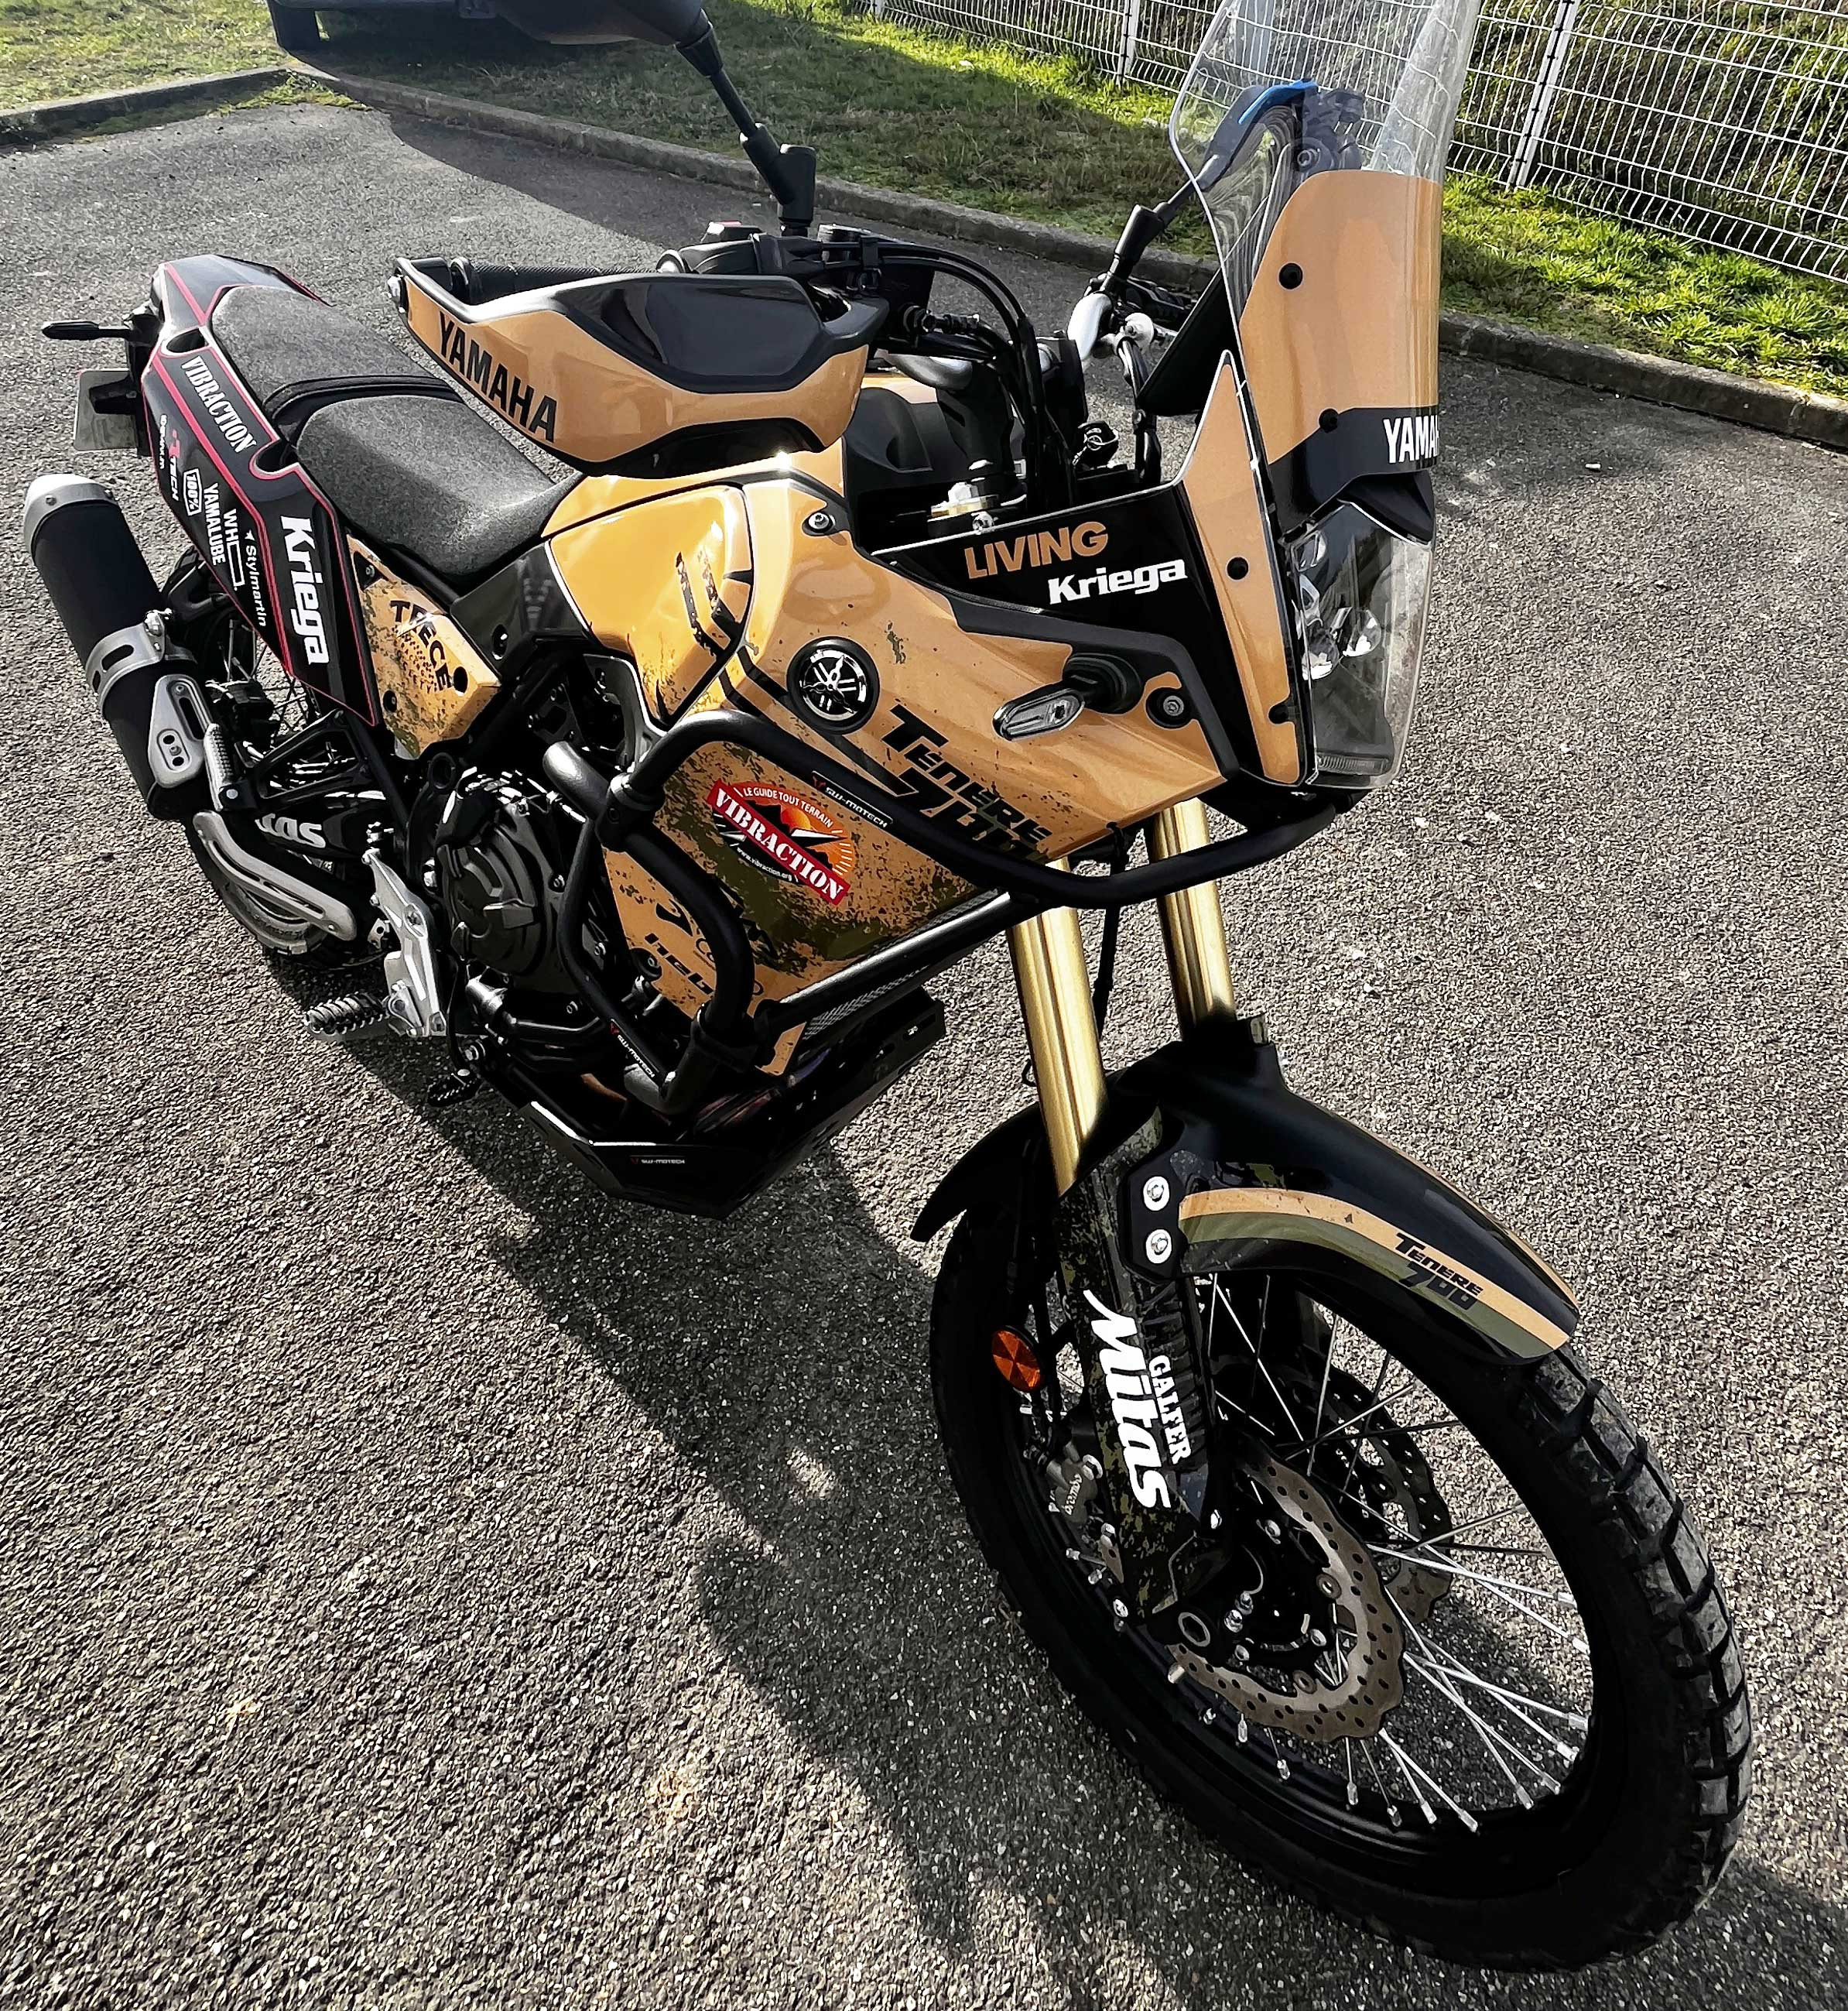 nuovo kit di decorazioni e adesivi per la moto Yamaha 700 ténéré